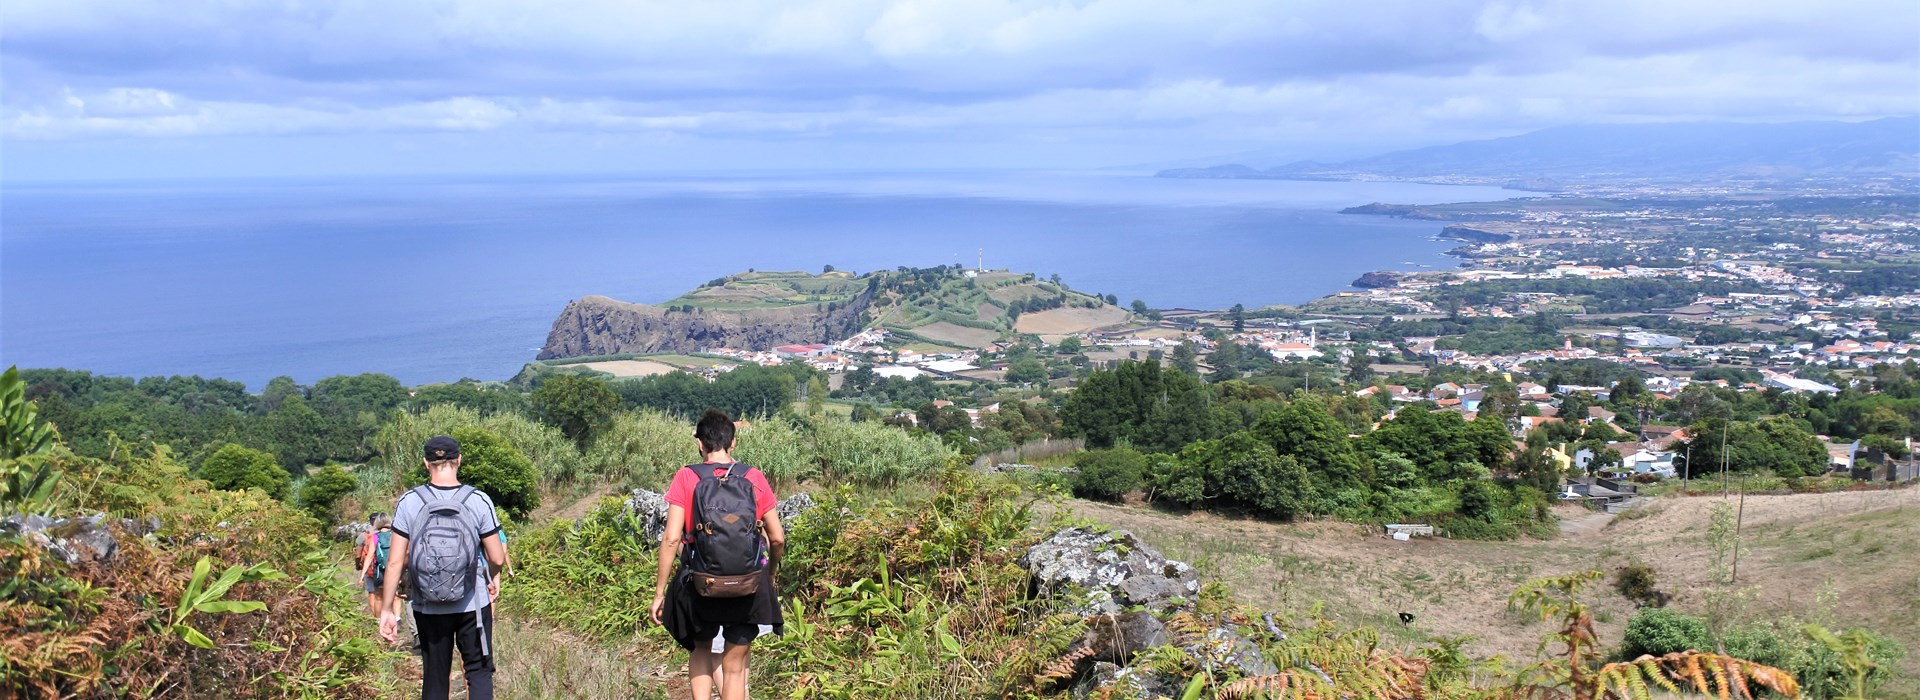 Visiter Le lac de Canario - Açores